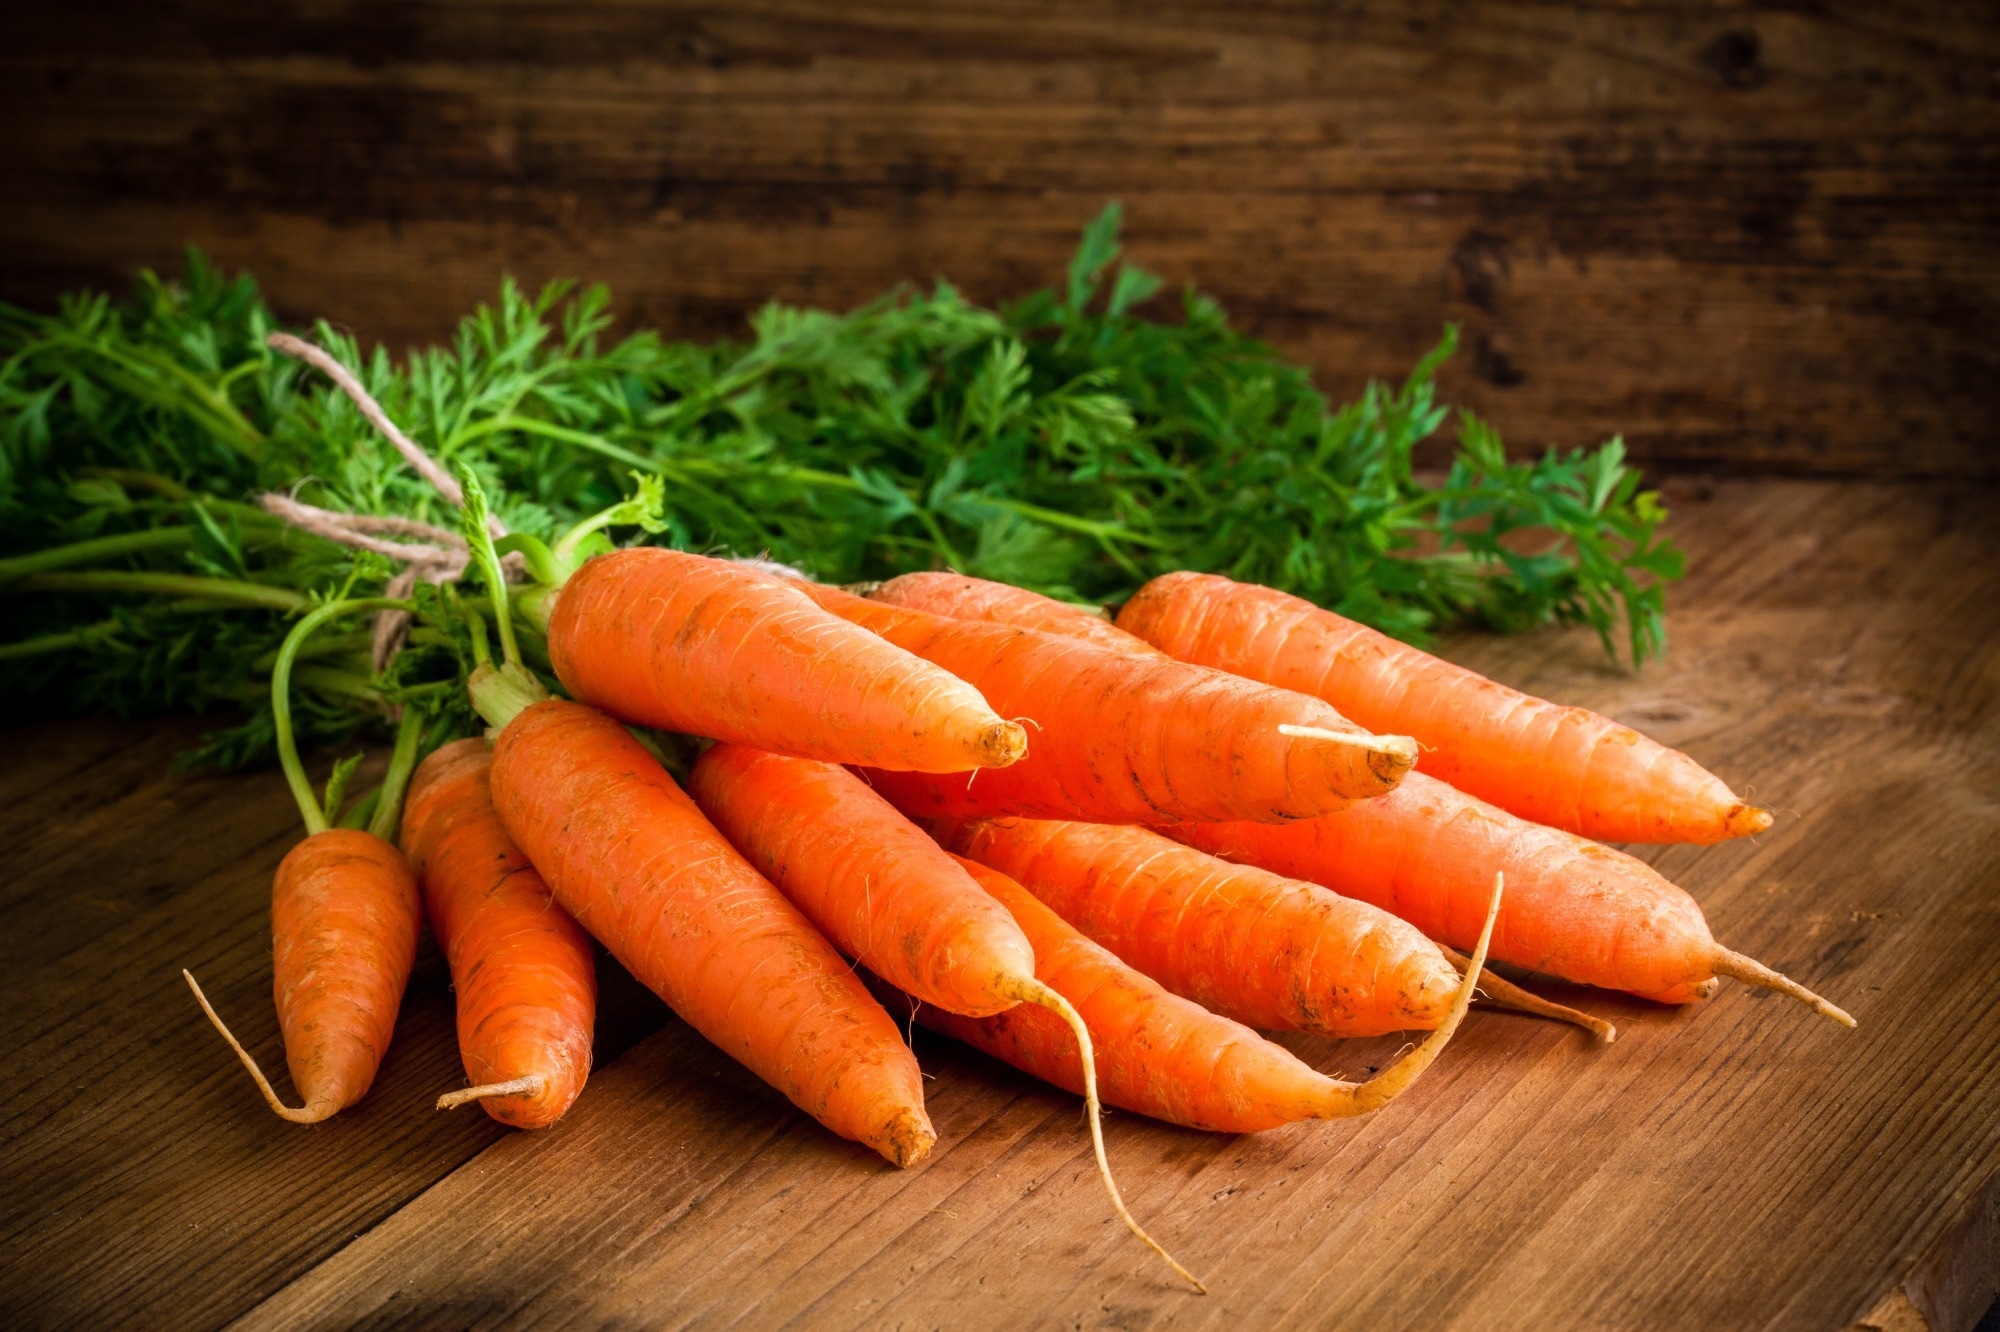 Генетически модифицированная морковь, производящая белок низин, перспективна в качестве натурального пищевого консерванта.